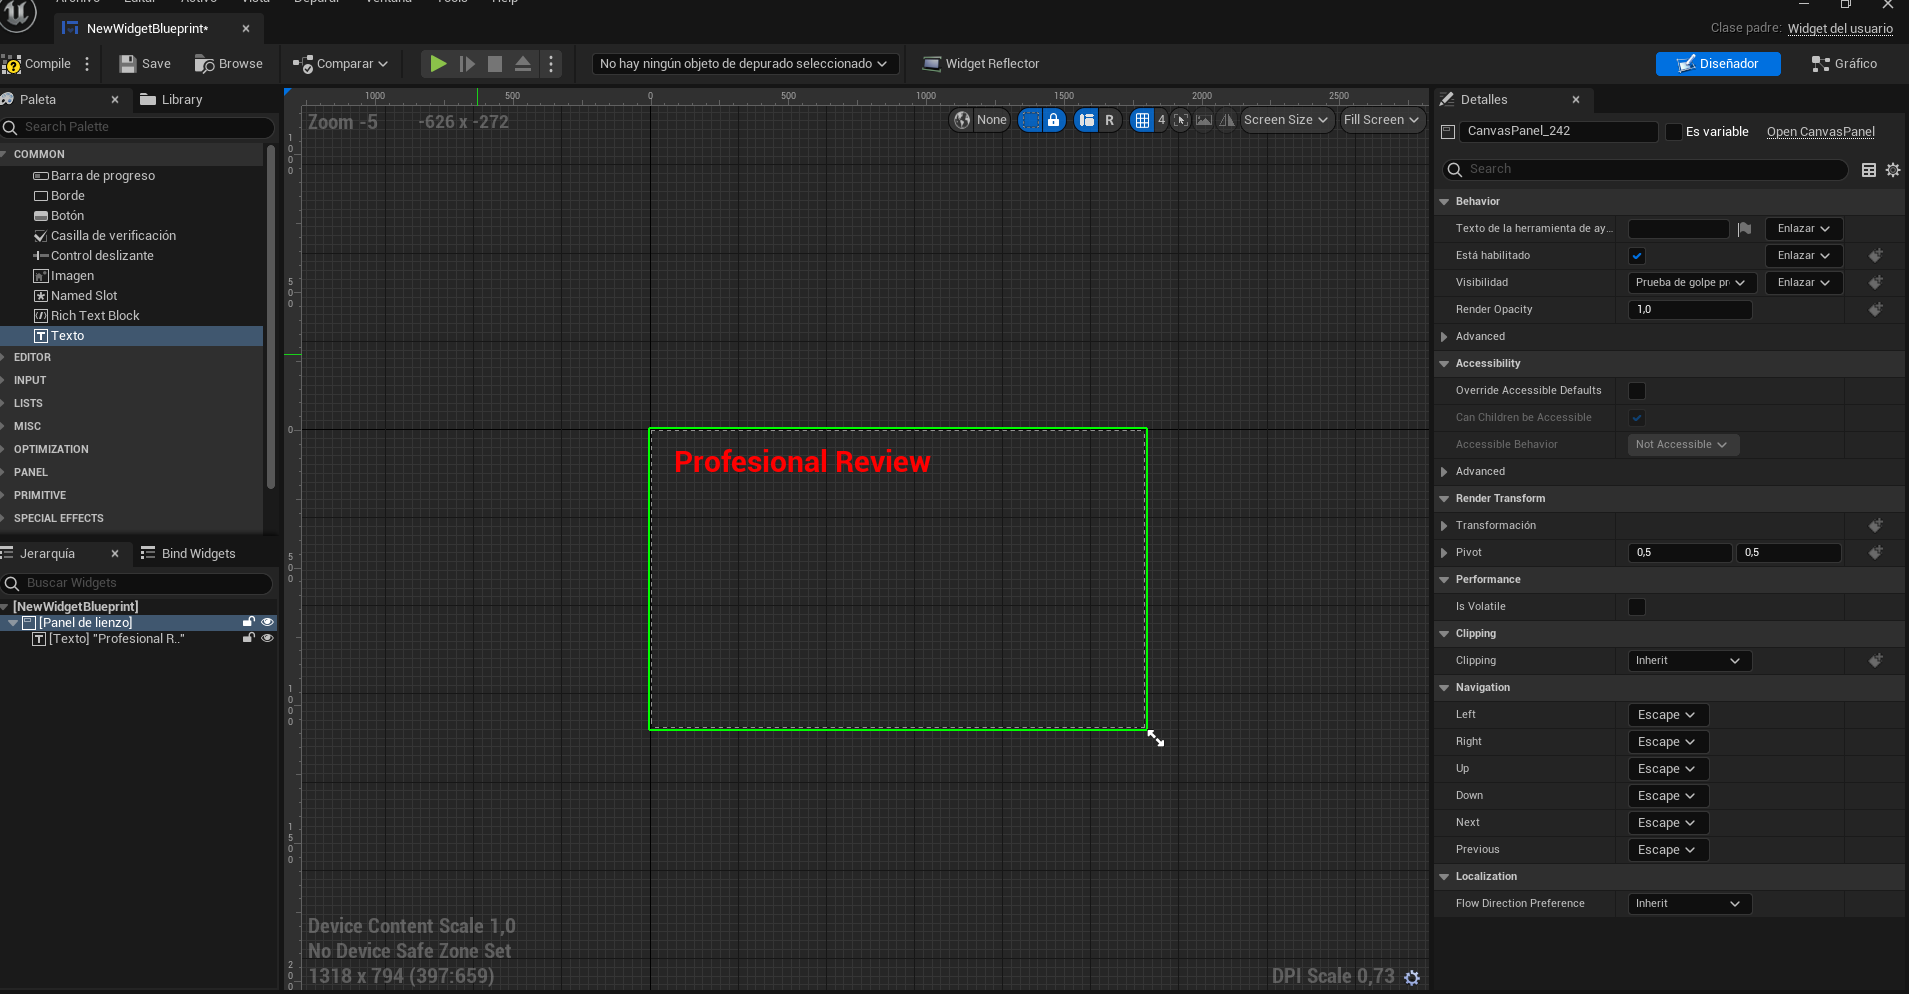 Cómo crear una interfaz en Unreal Engine 5